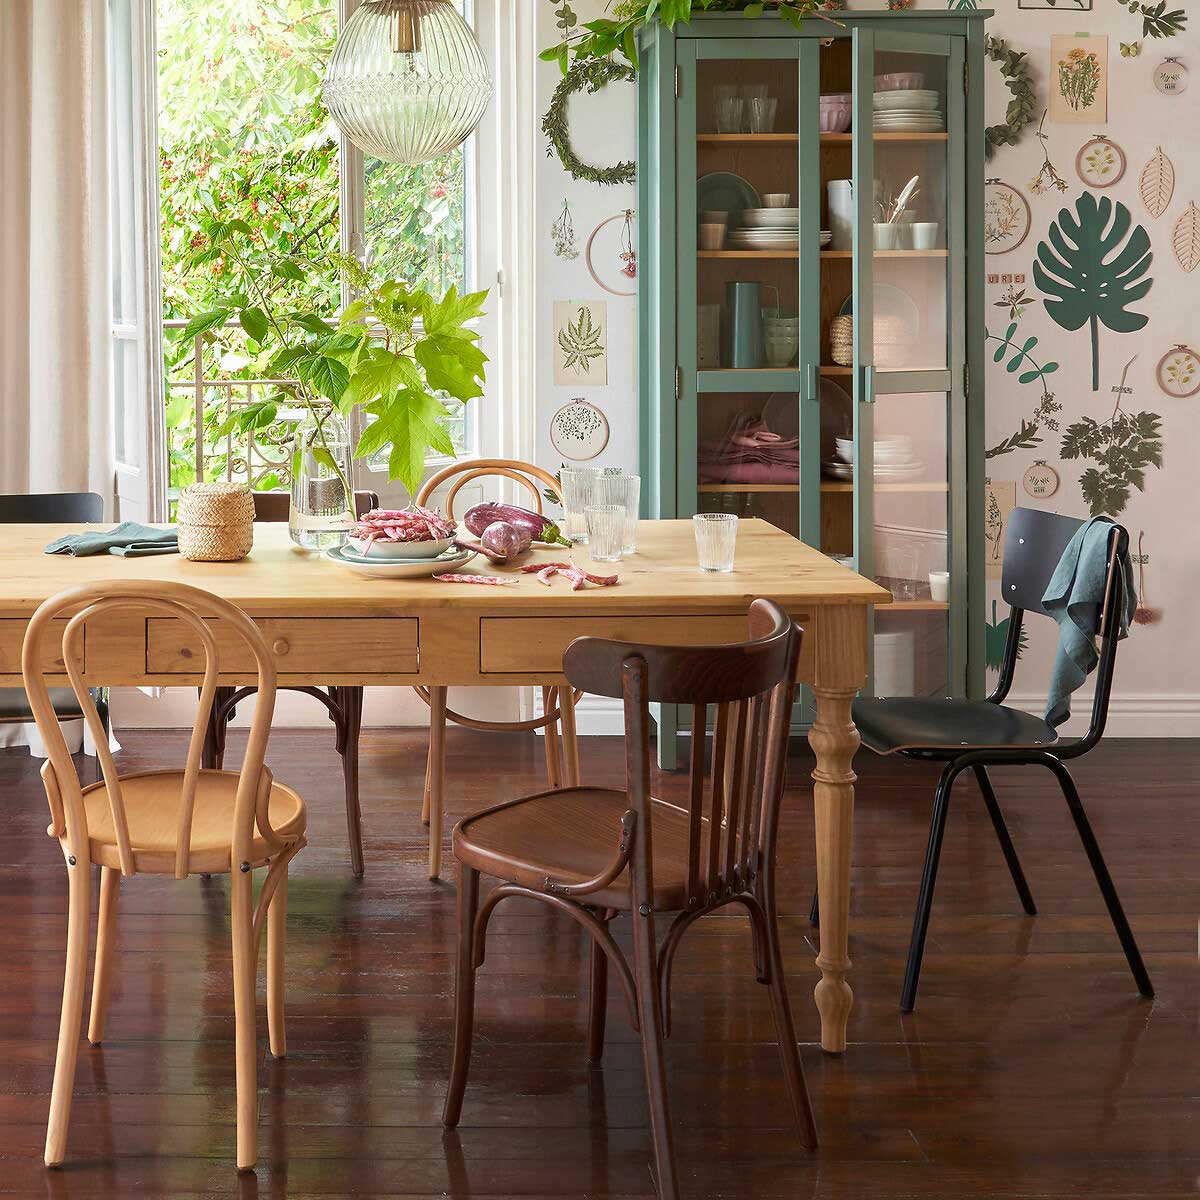 Cozinha em Estilo Vintage: Crie um Ambiente Elegante com Tons Pastel e Detalhes!